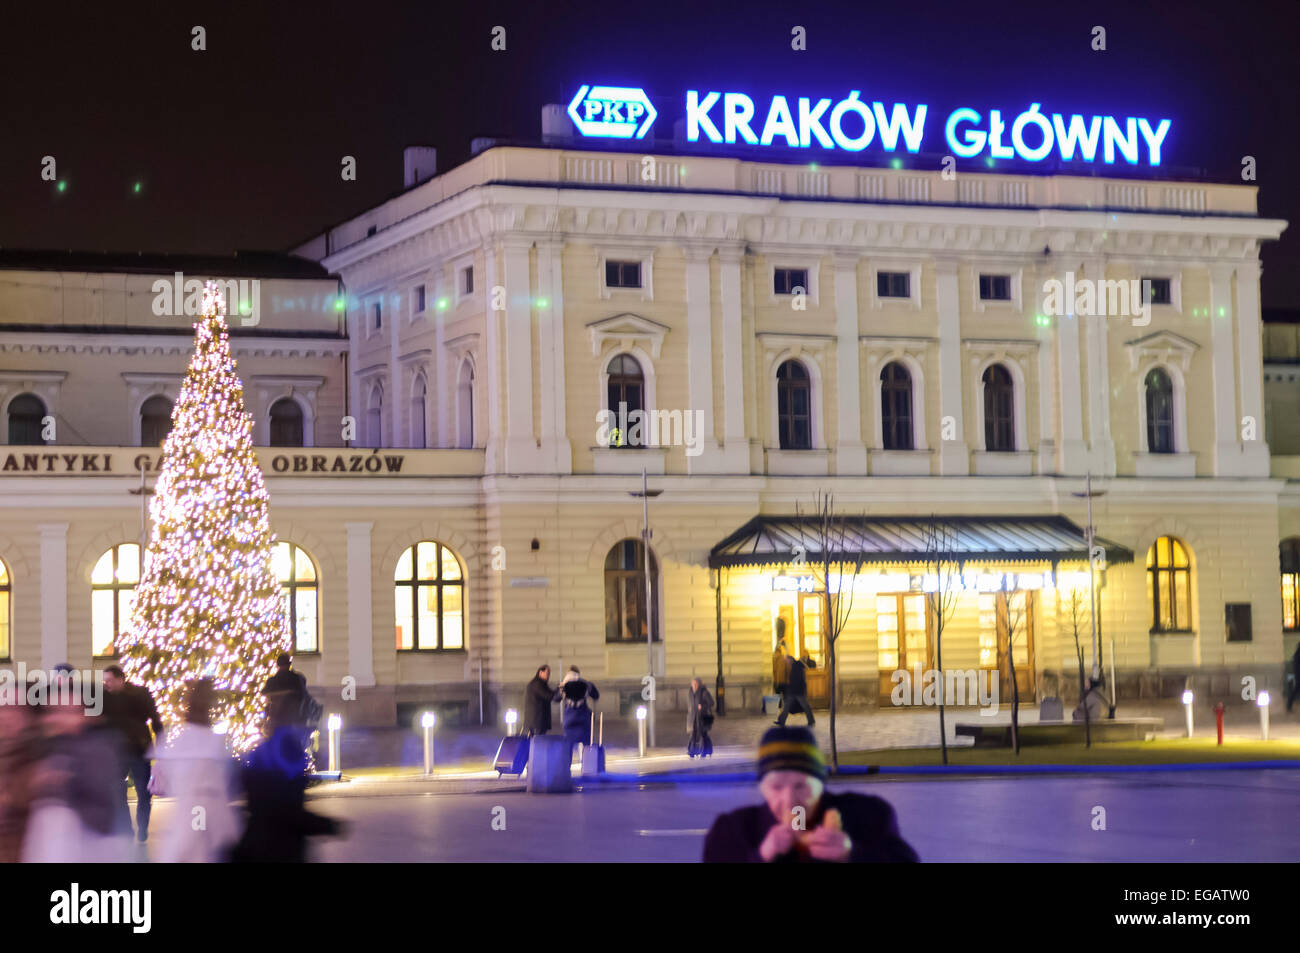 Krakow Glowny railway Station Stock Photo